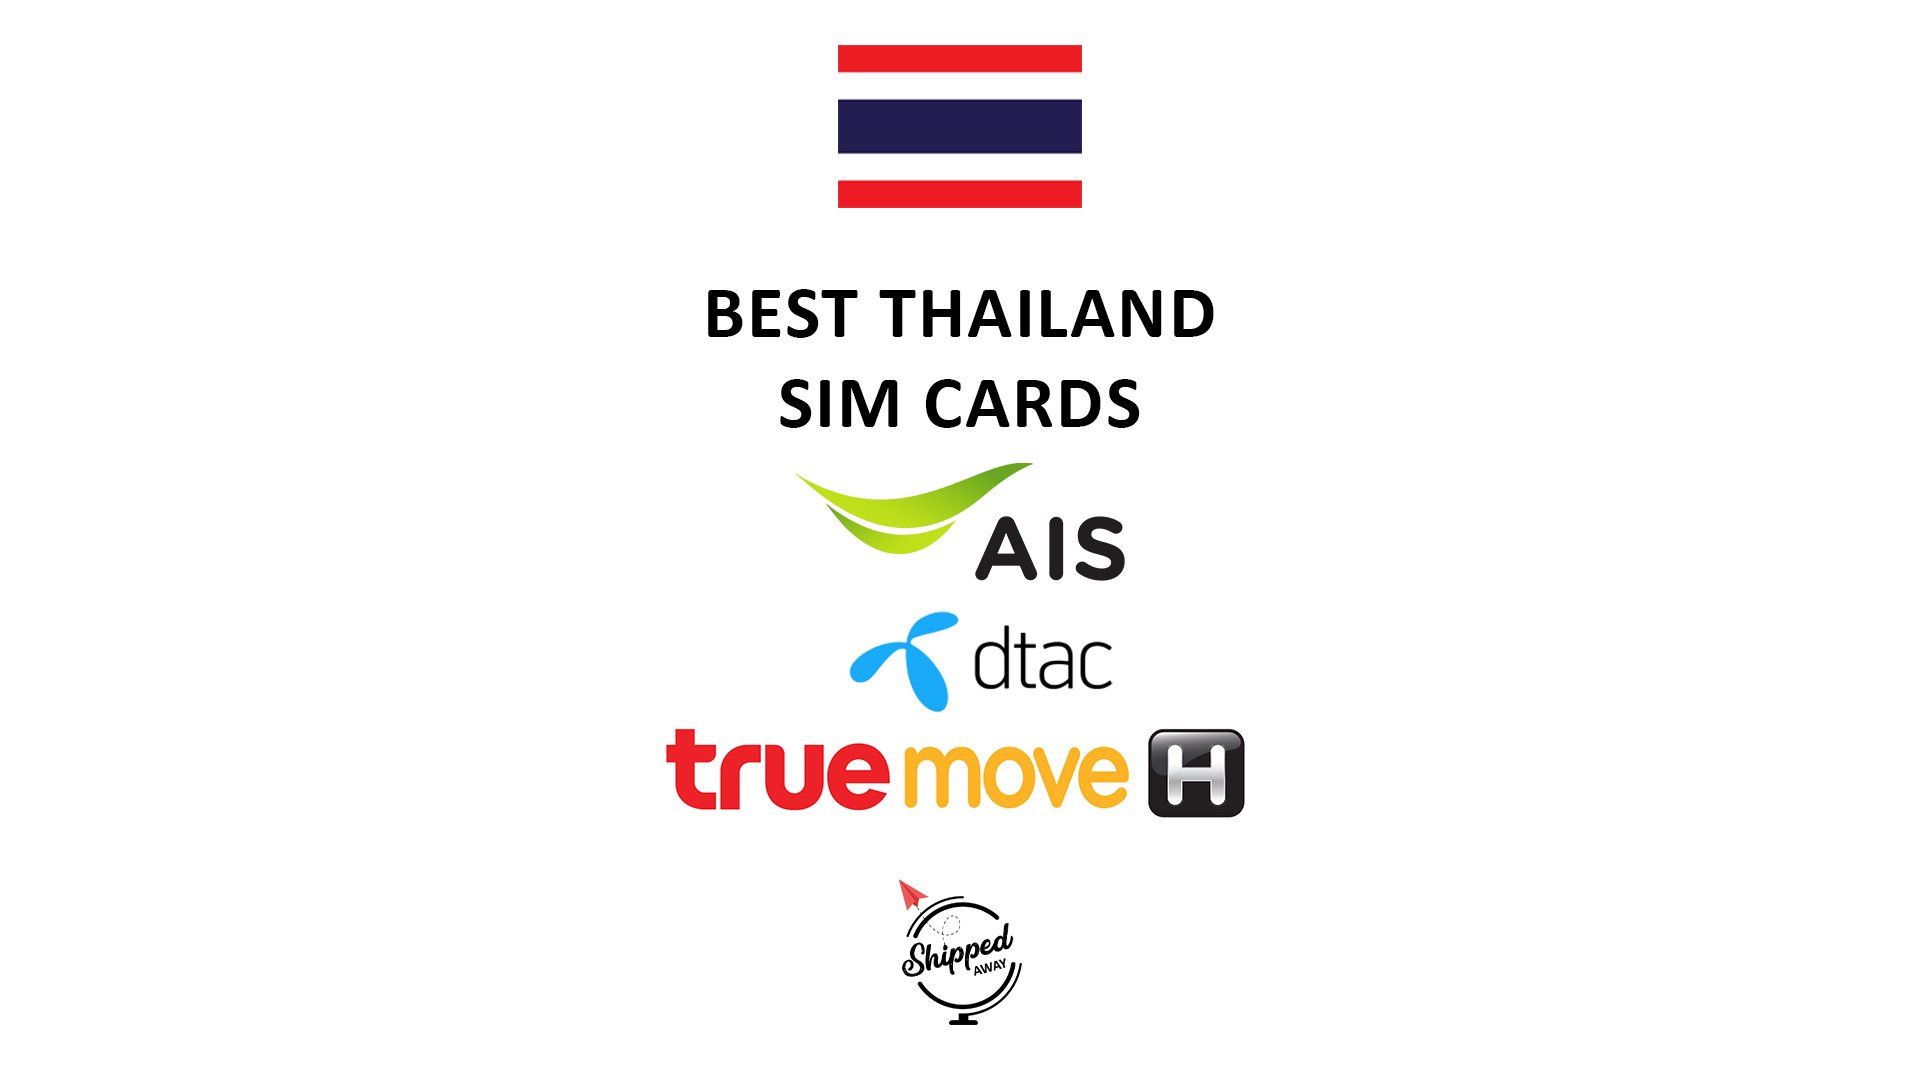 thailand tourist sim card ais